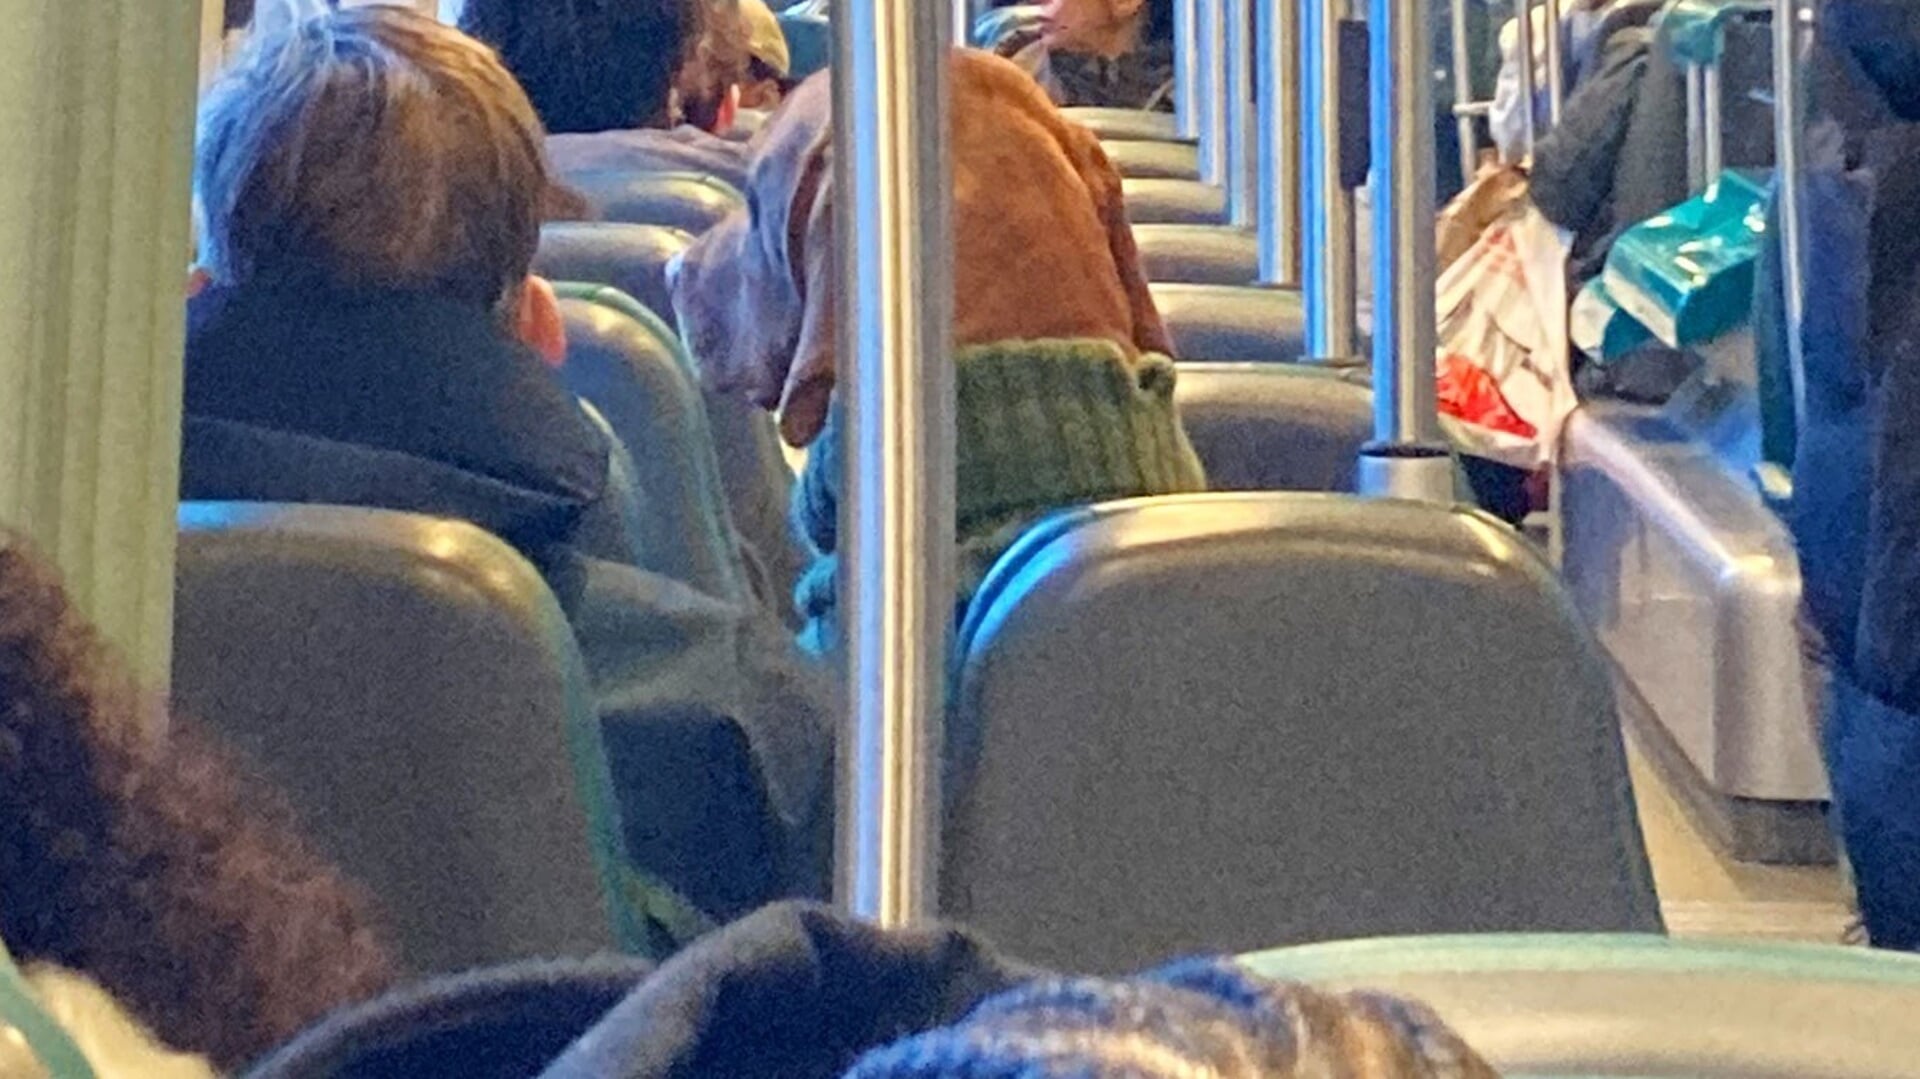 'Er zit gewoon een hond met een trui op een stoel in de tram en dat is het droogste dat ik ooit heb gezien.' Foto: Wouter Vocke